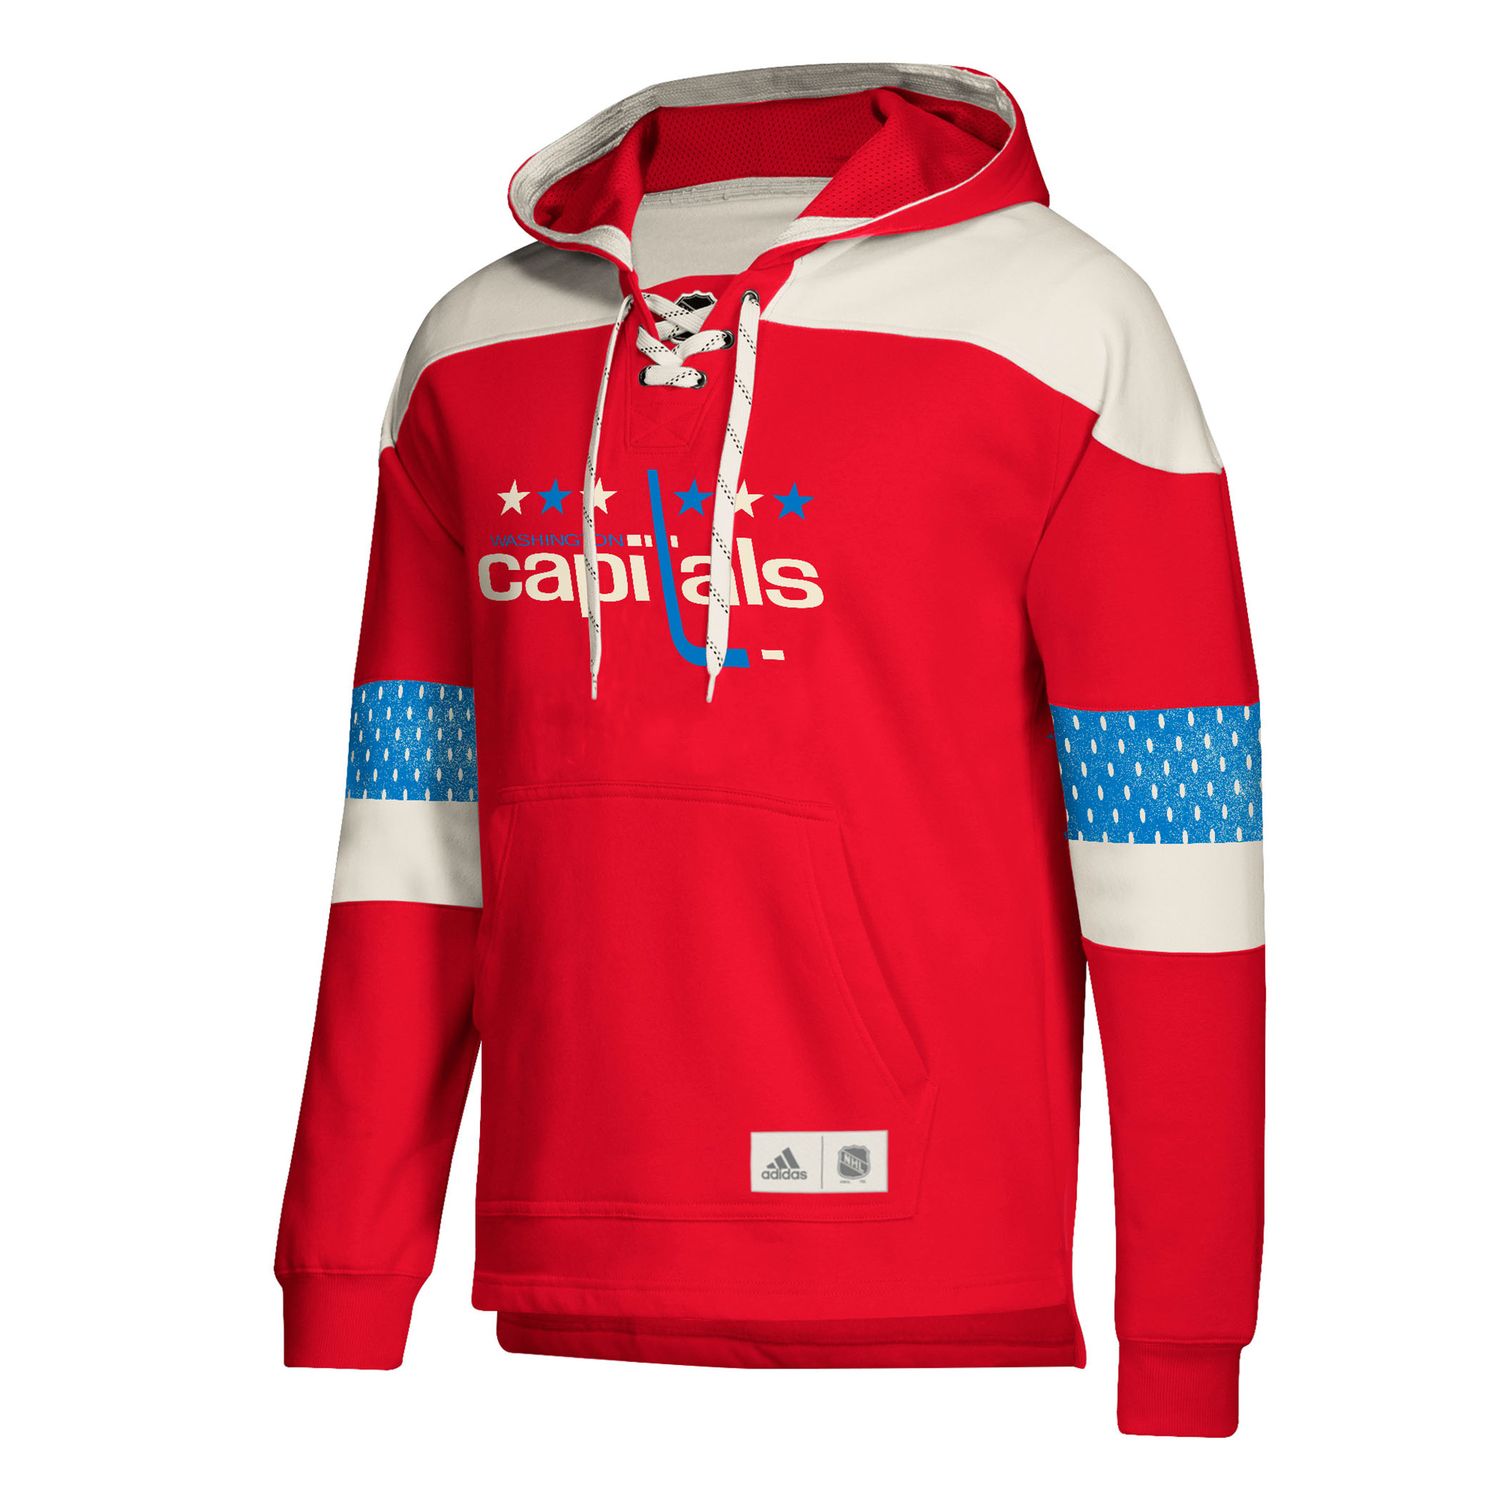 capitals hoodie jersey